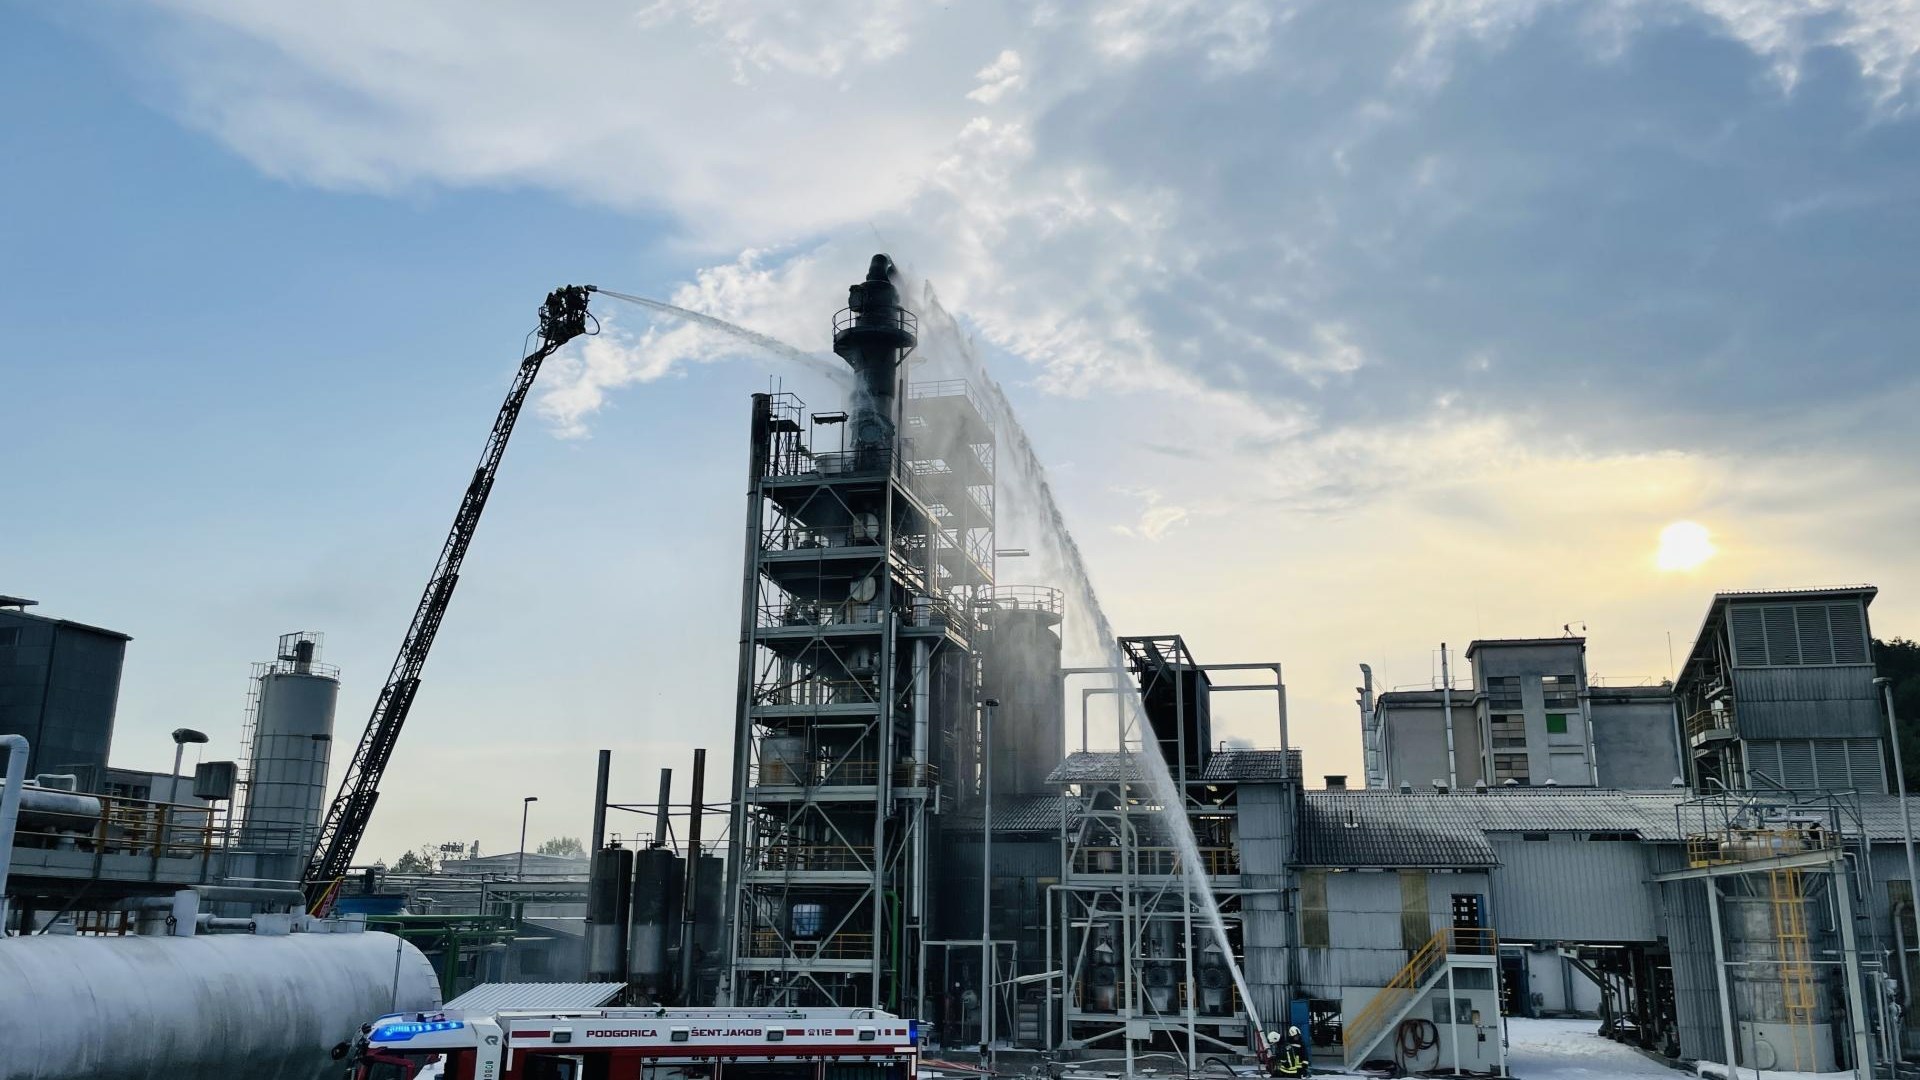 #foto: O incêndio na fábrica de Belinka foi extinto, causando grandes danos materiais